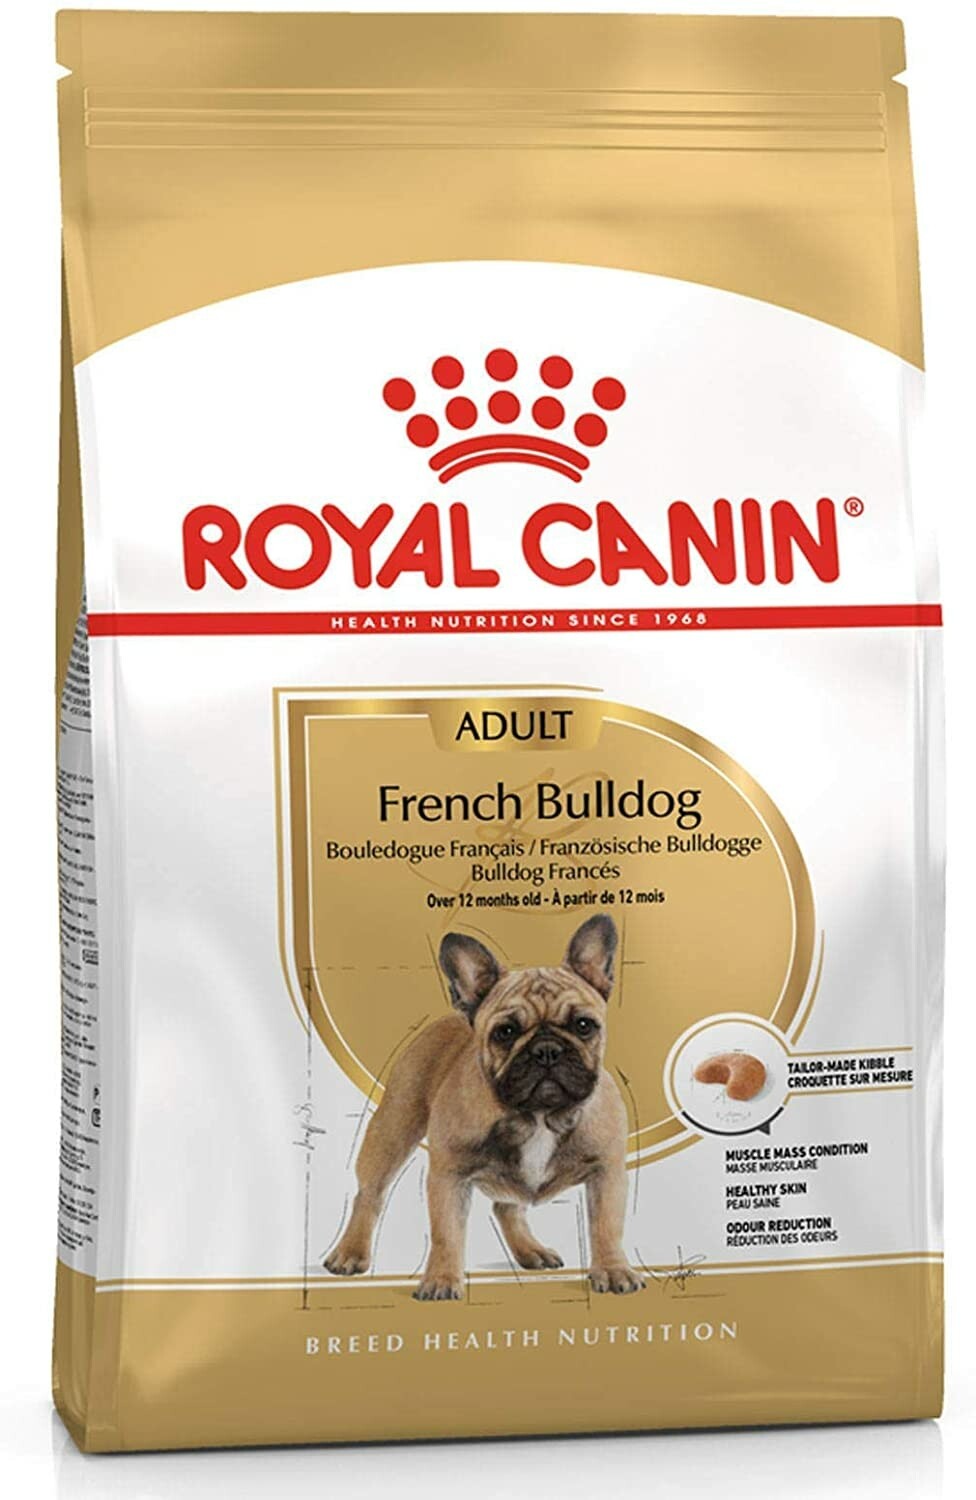 Royal canin French bulldog